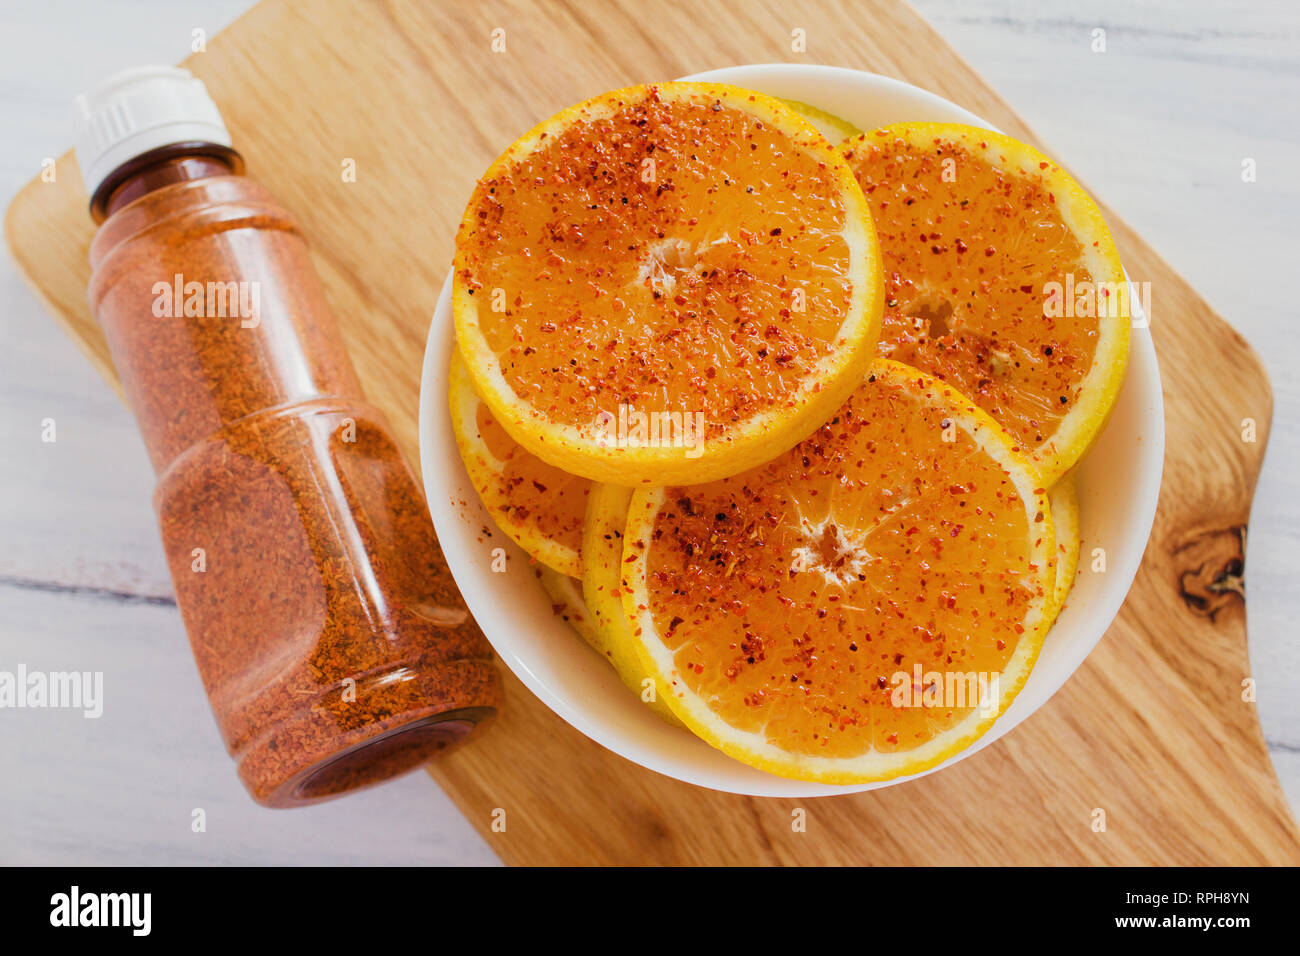 Fruta naranja con ají picante mexicana, en la ciudad de México, naranja con chile Foto de stock